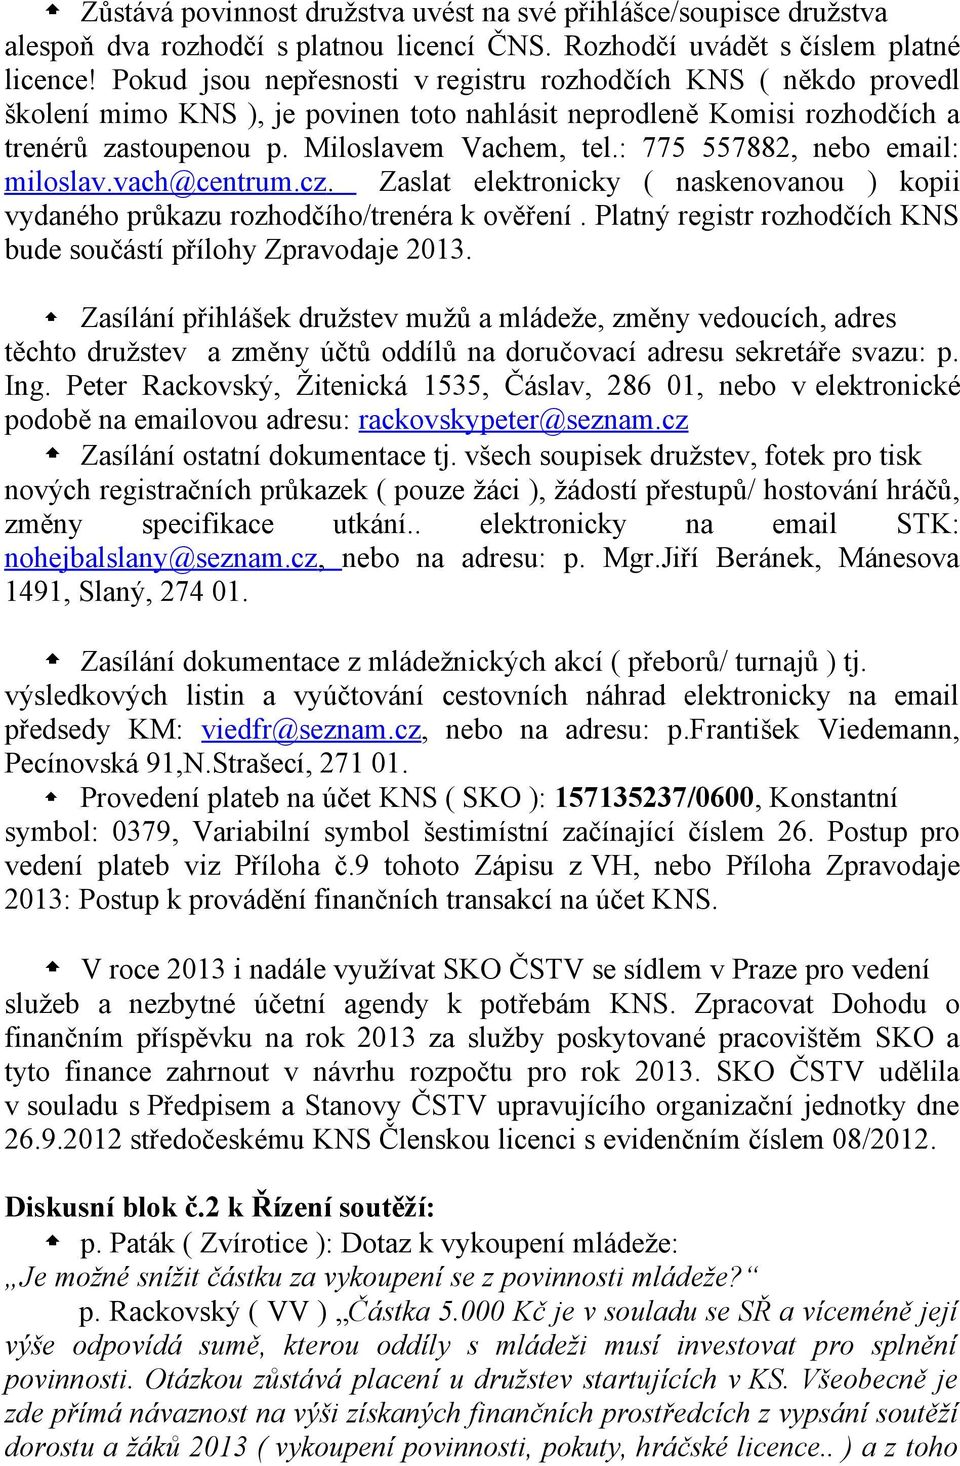 : 775 557882, nebo email: miloslav.vach@centrum.cz. Zaslat elektronicky ( naskenovanou ) kopii vydaného průkazu rozhodčího/trenéra k ověření.